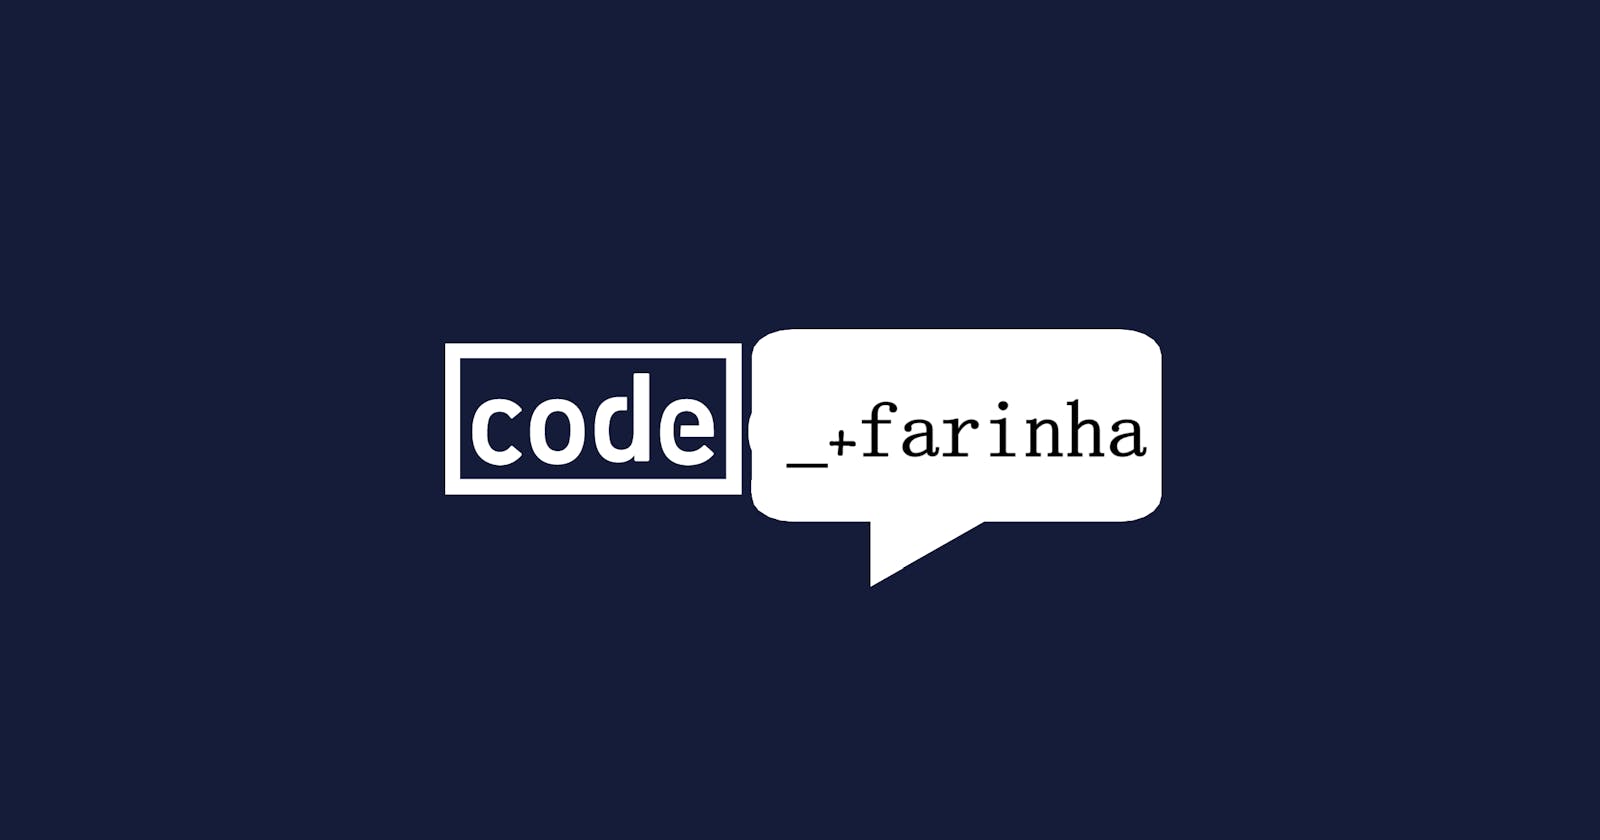 Welcome to Code_+ Farinha!